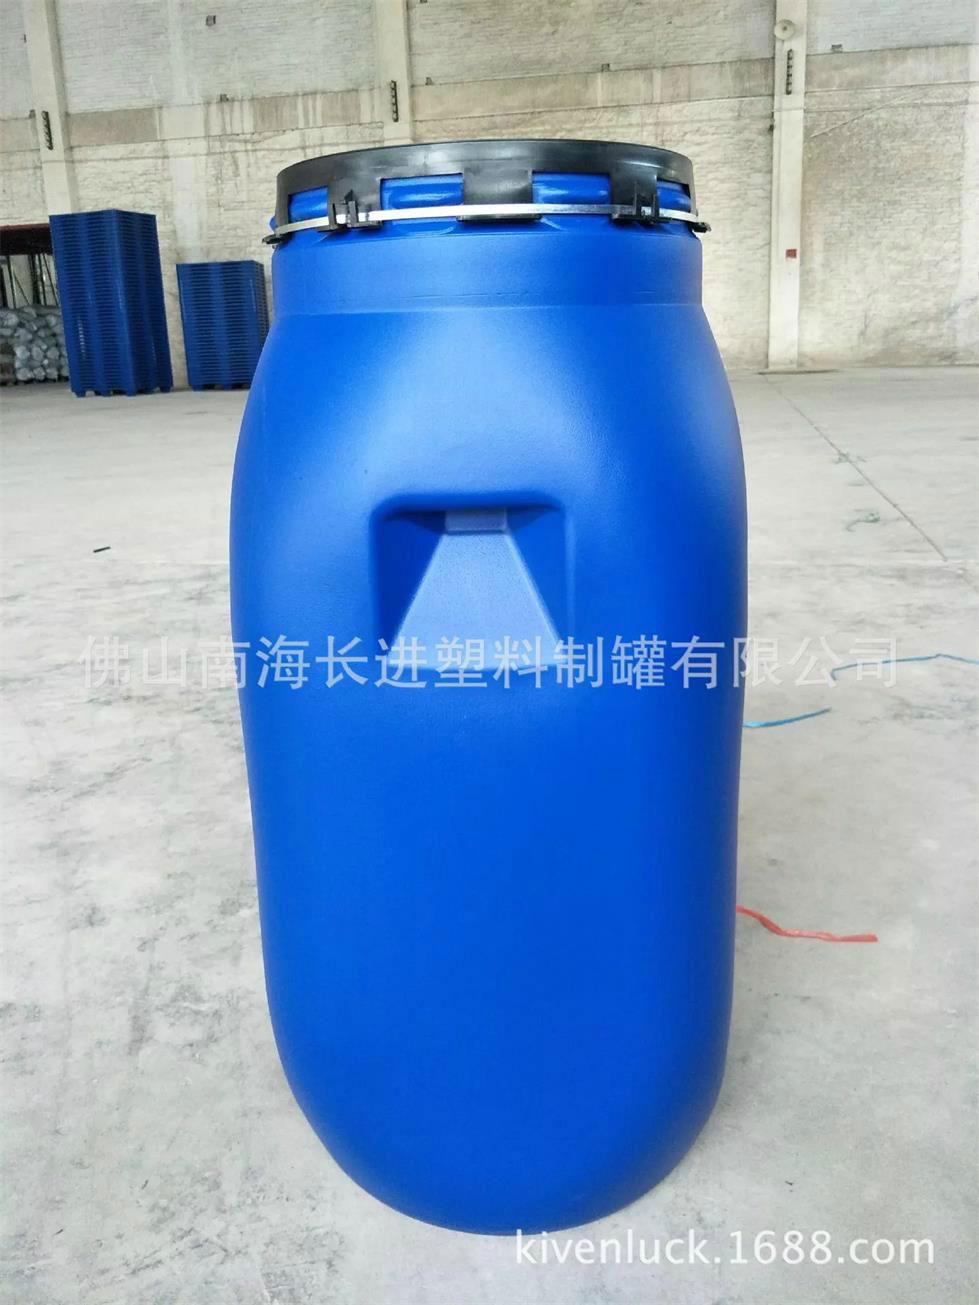 125kg Blue Chemical open barrel 4